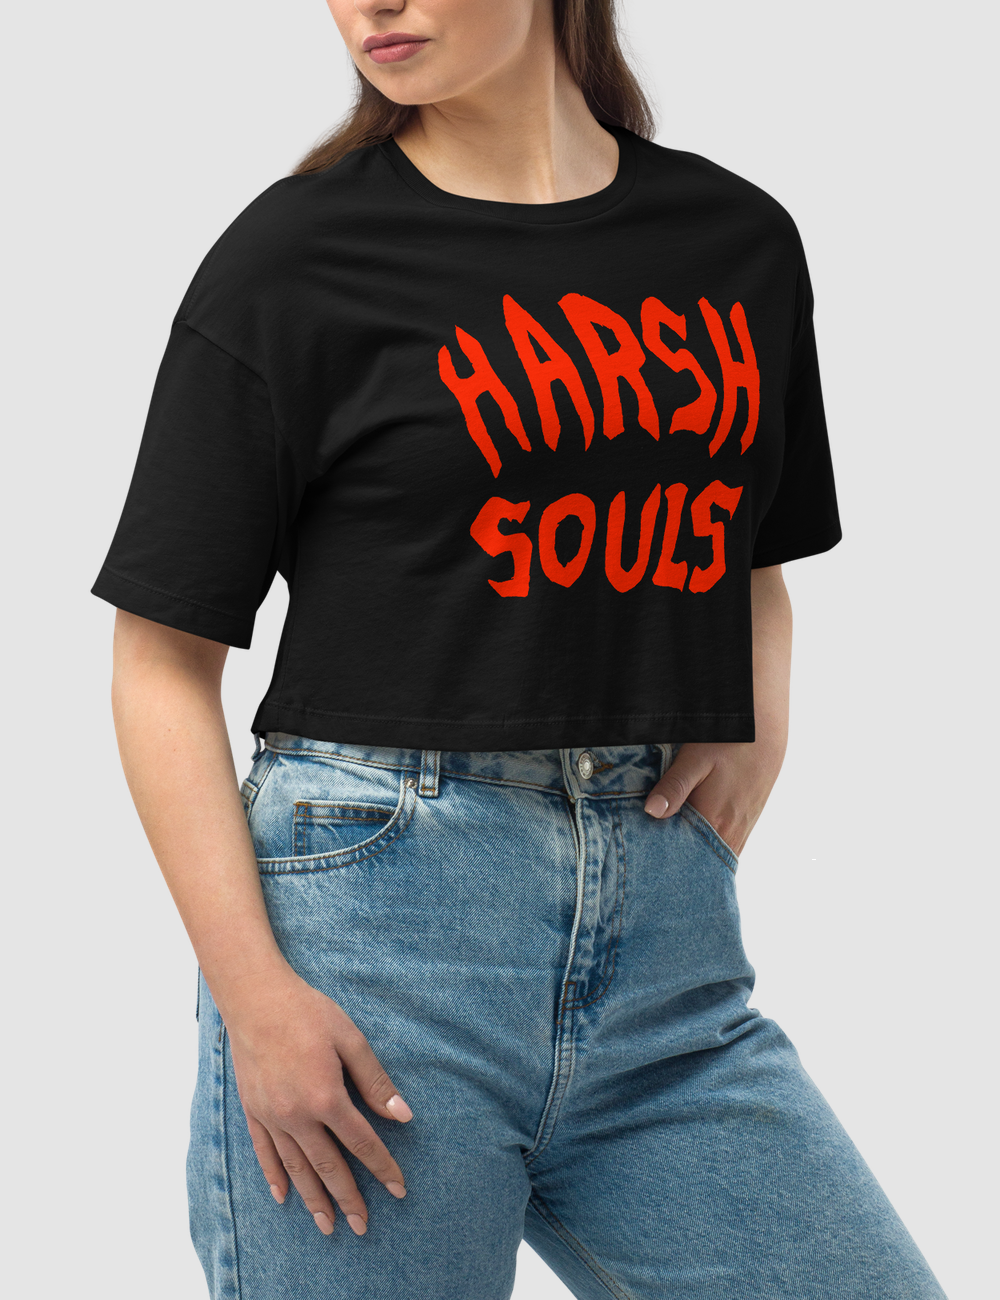 Harsh Souls (Red Print) | Women's Loose Fit Crop Top T-Shirt OniTakai